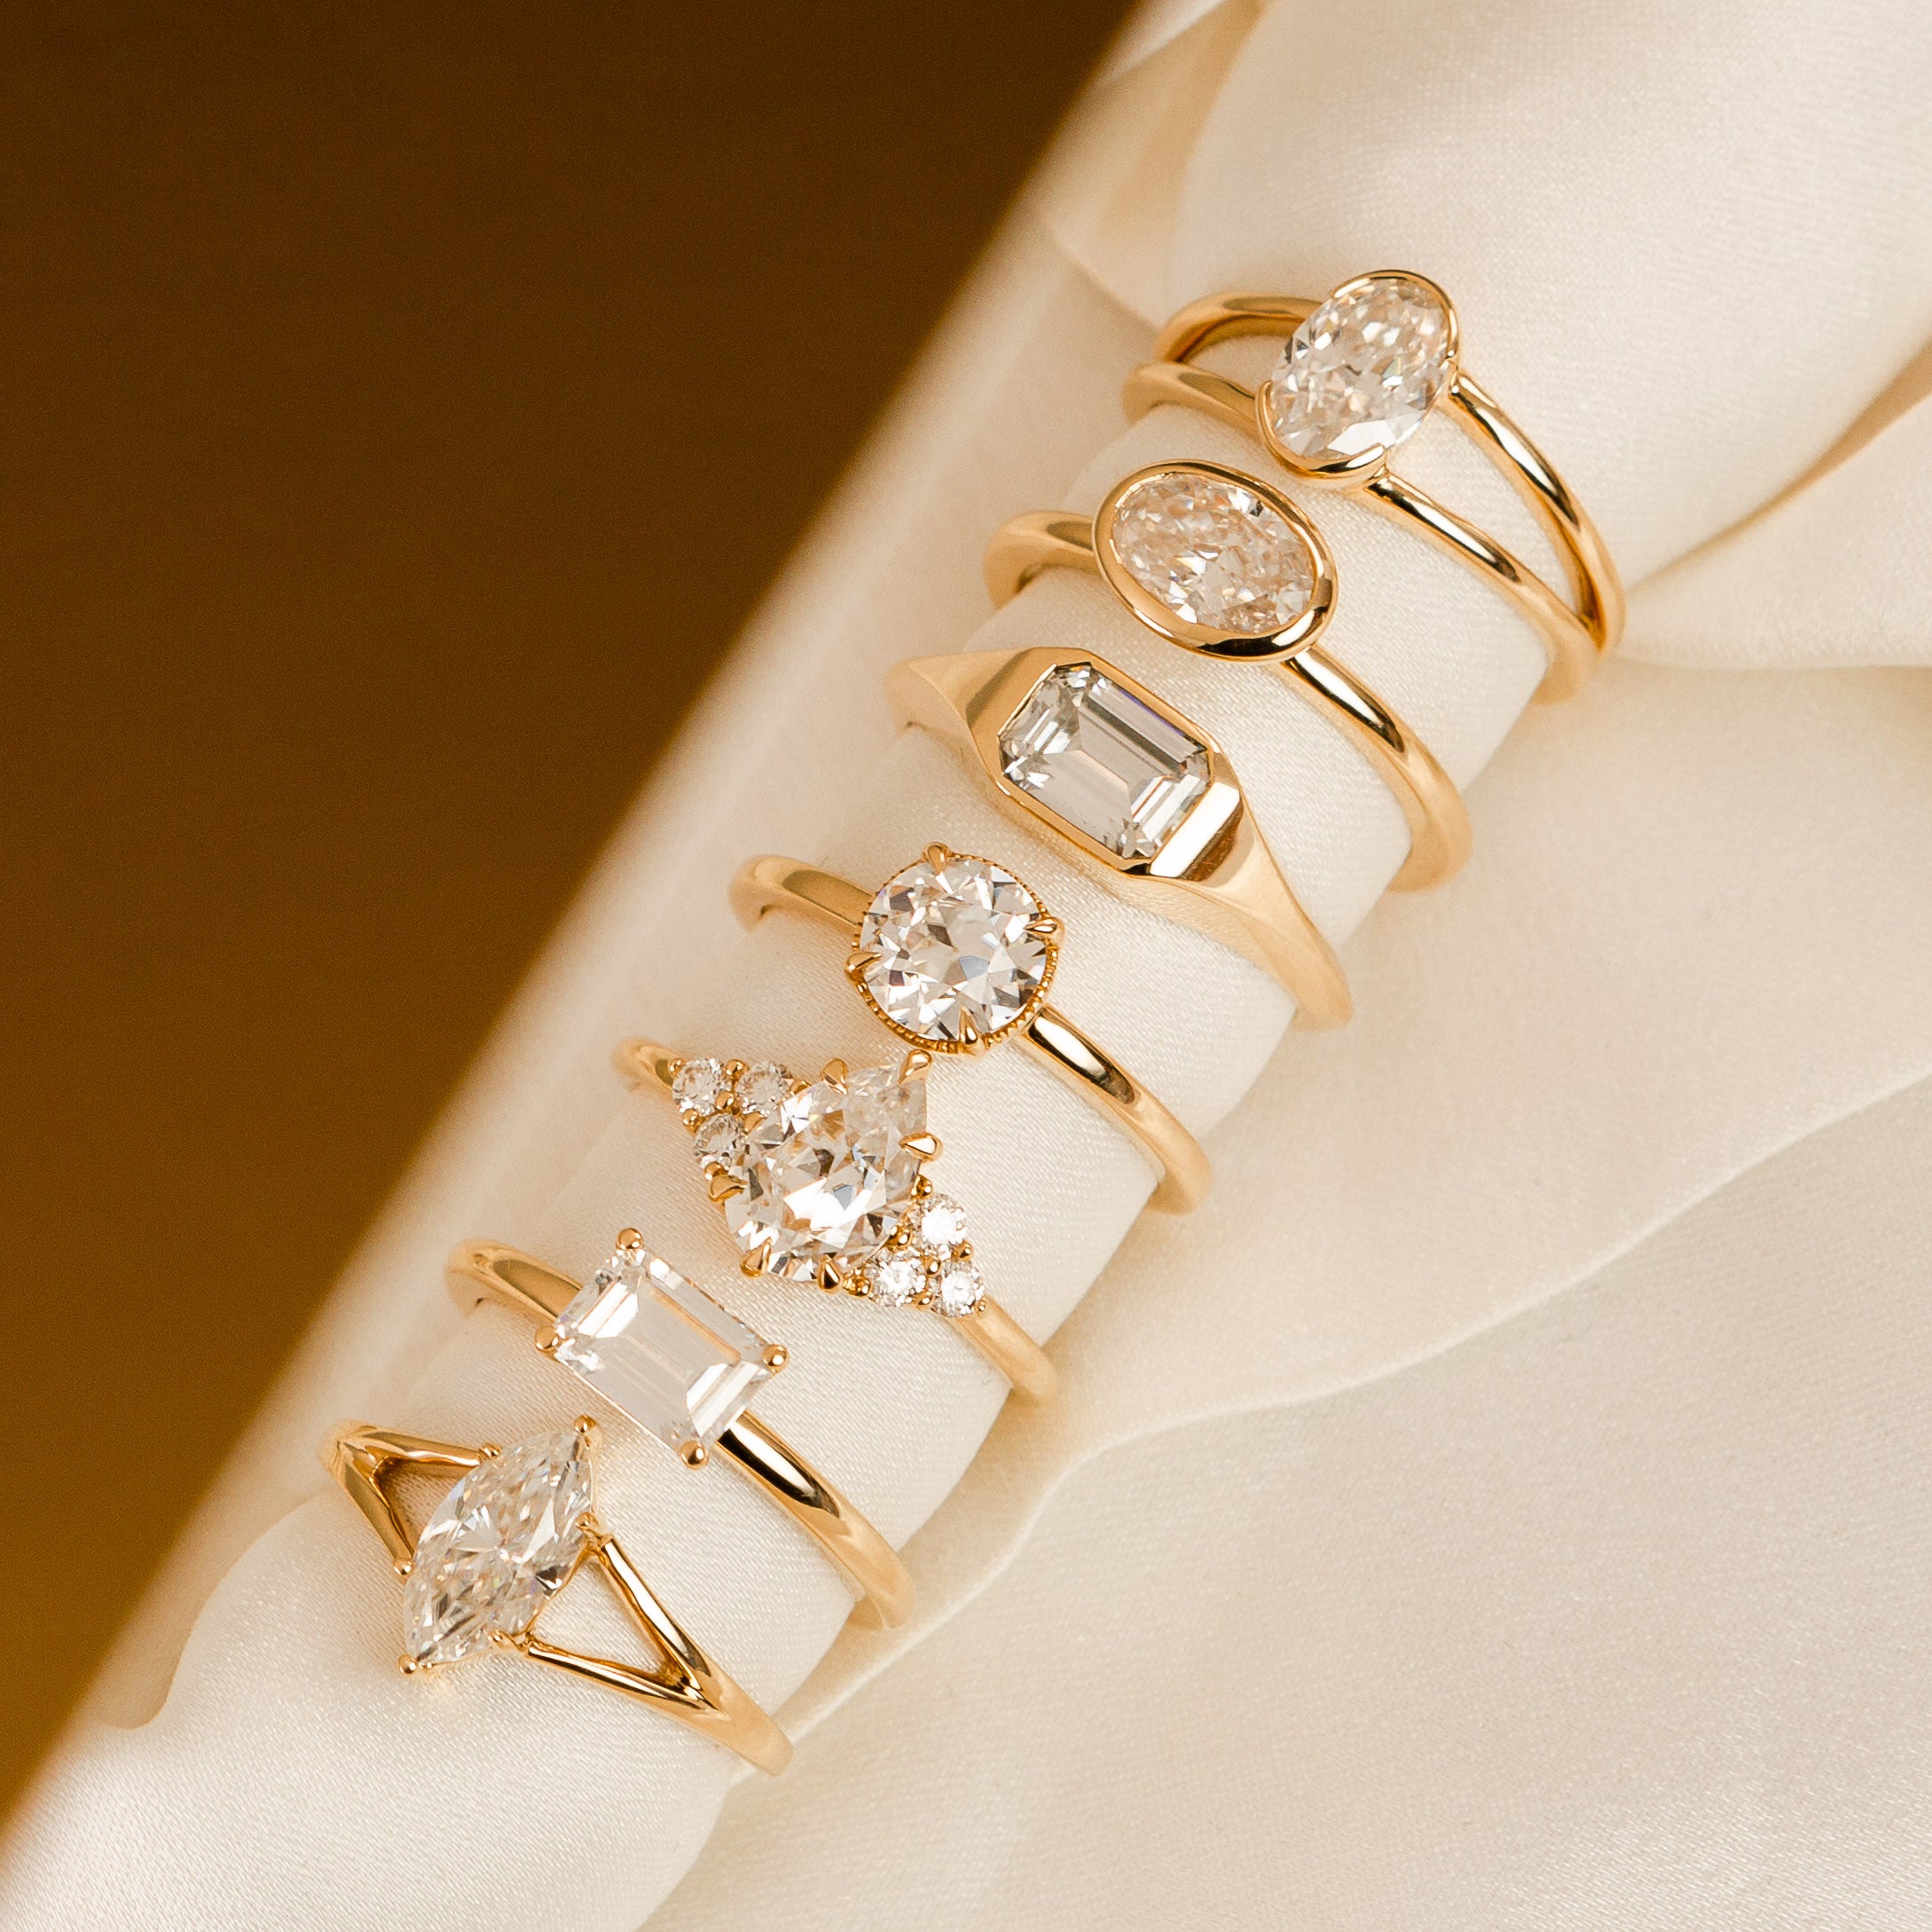 PETITE ROSE Wedding Ring Set. Moissanite Rose Cut in 14k Gold. Made to Order  - Etsy